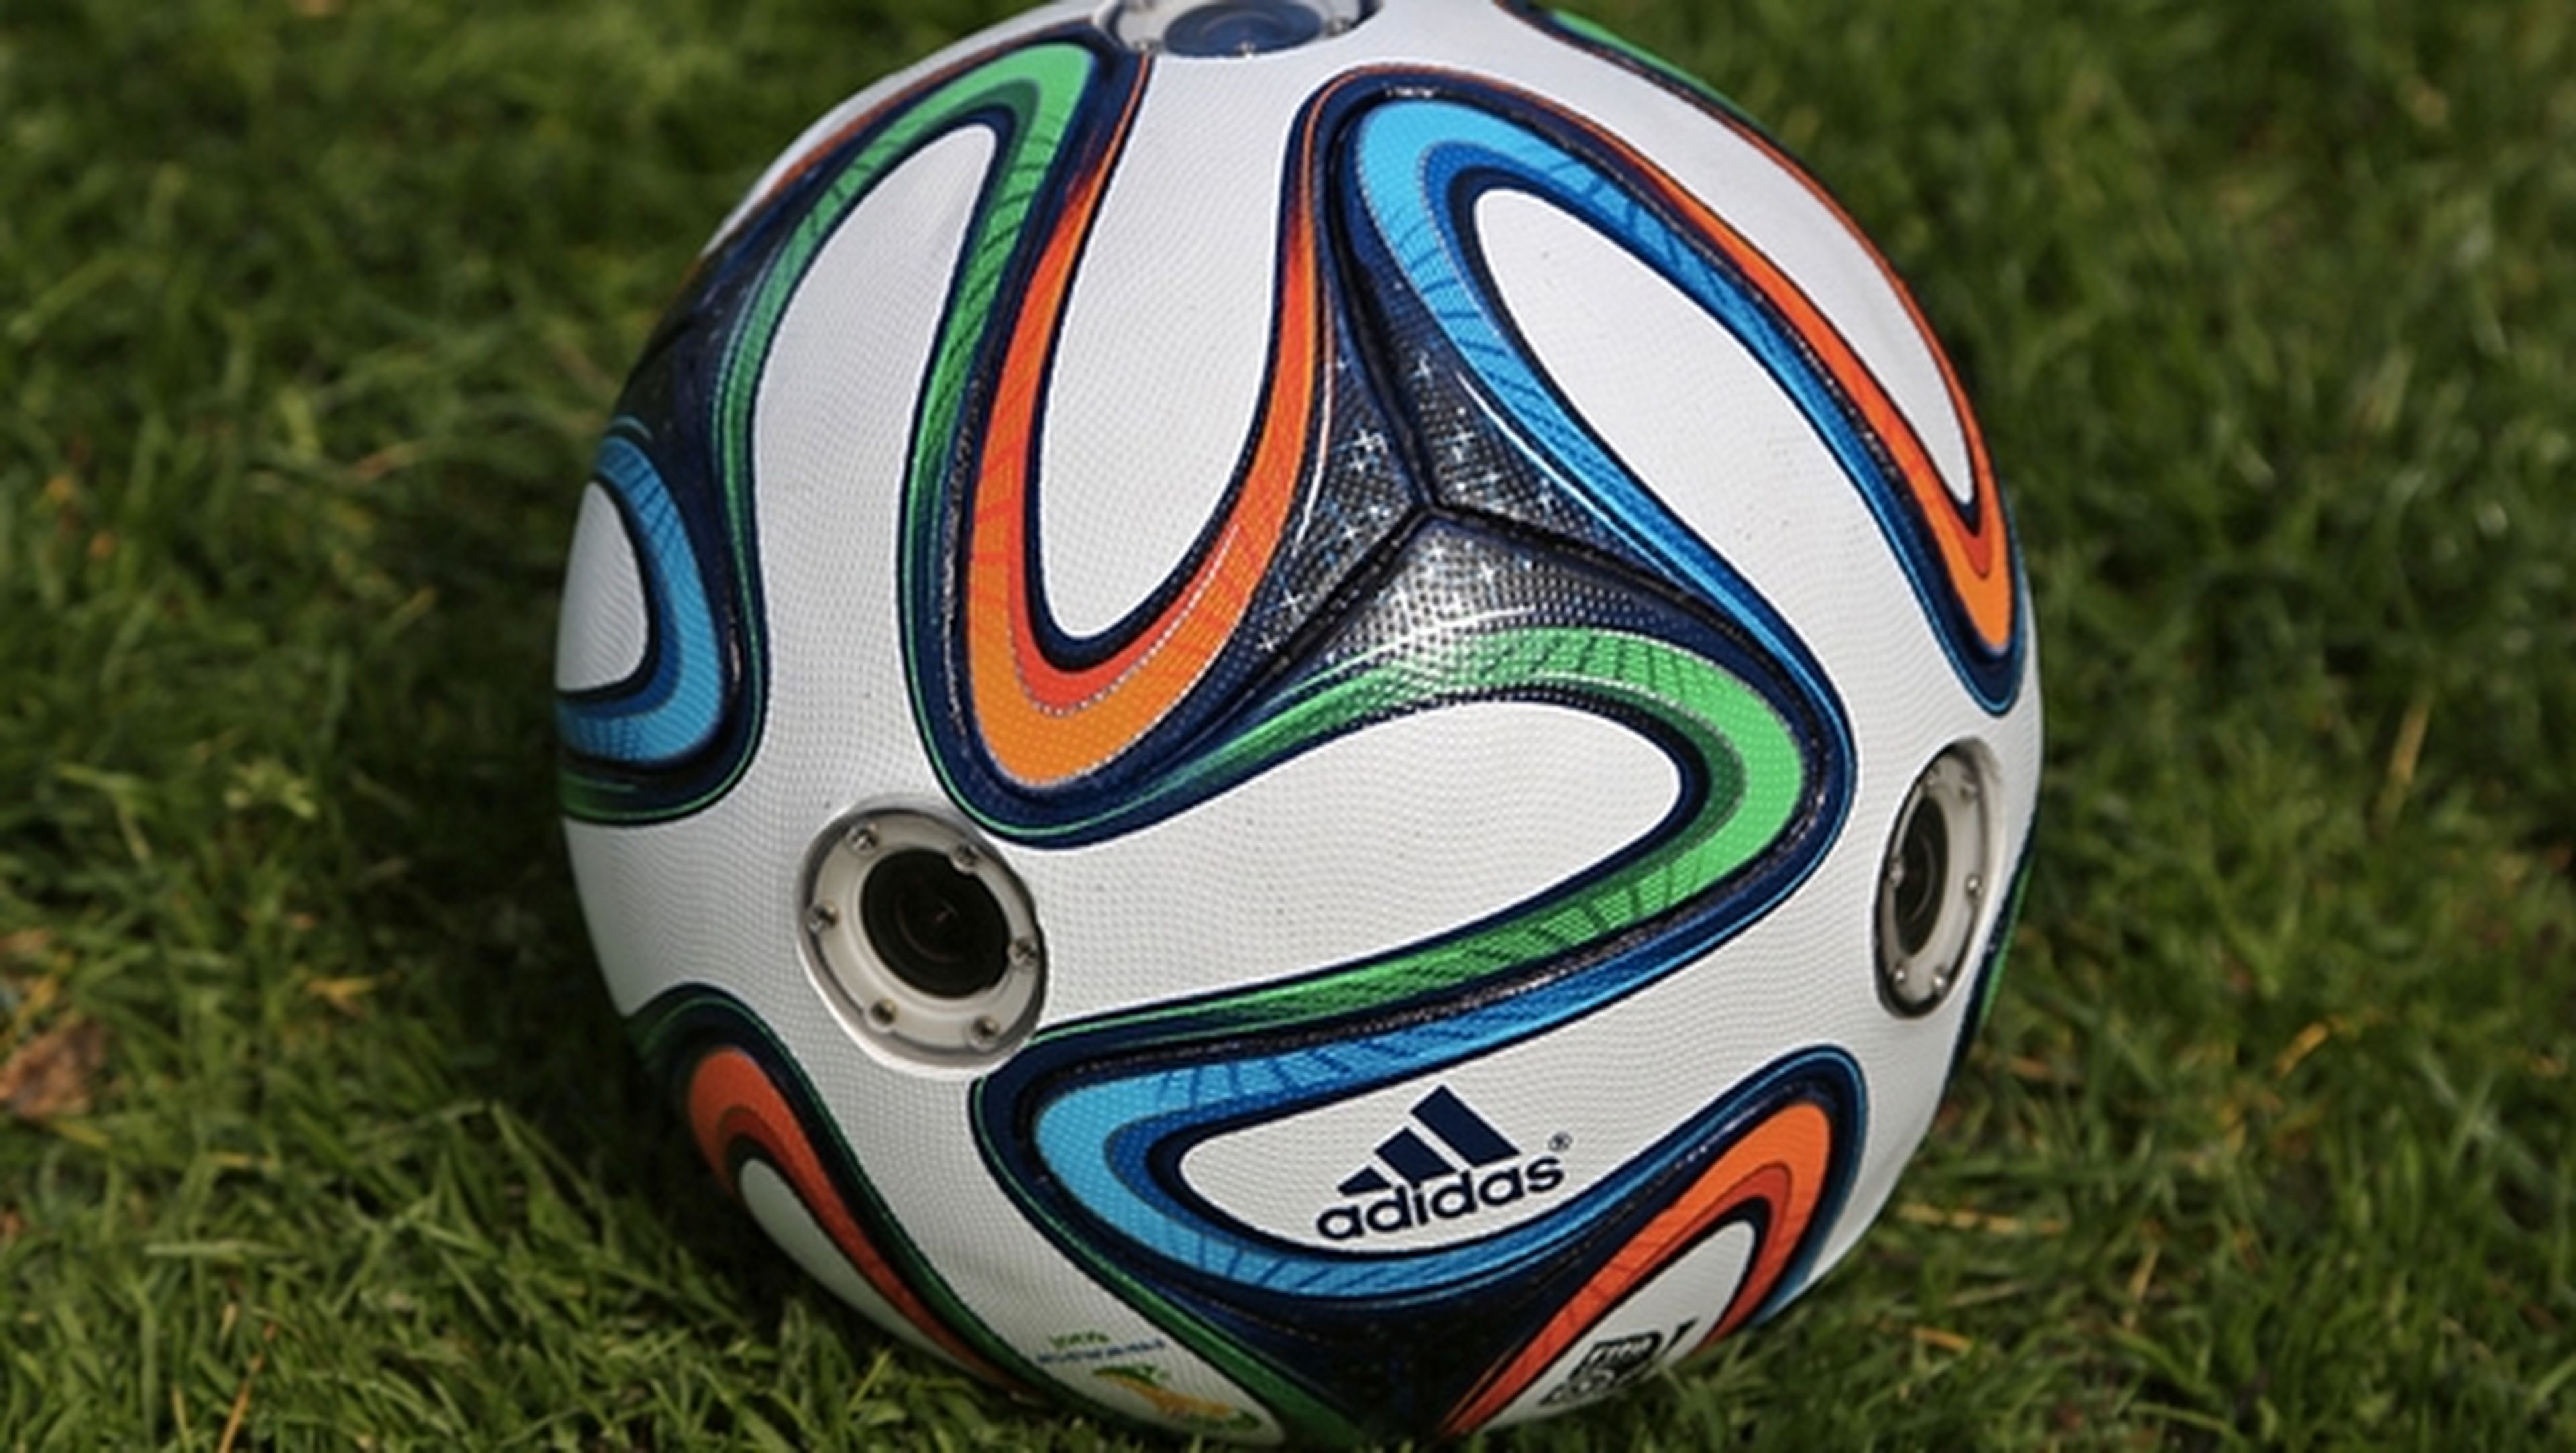 Adidas Brazuca, el balón oficial del Mundial de Fútbol Brasil 2014 con seis cámaras incorporadas, para grabar imágenes panorámicas de 360 grados desde el punto de vista del balón.